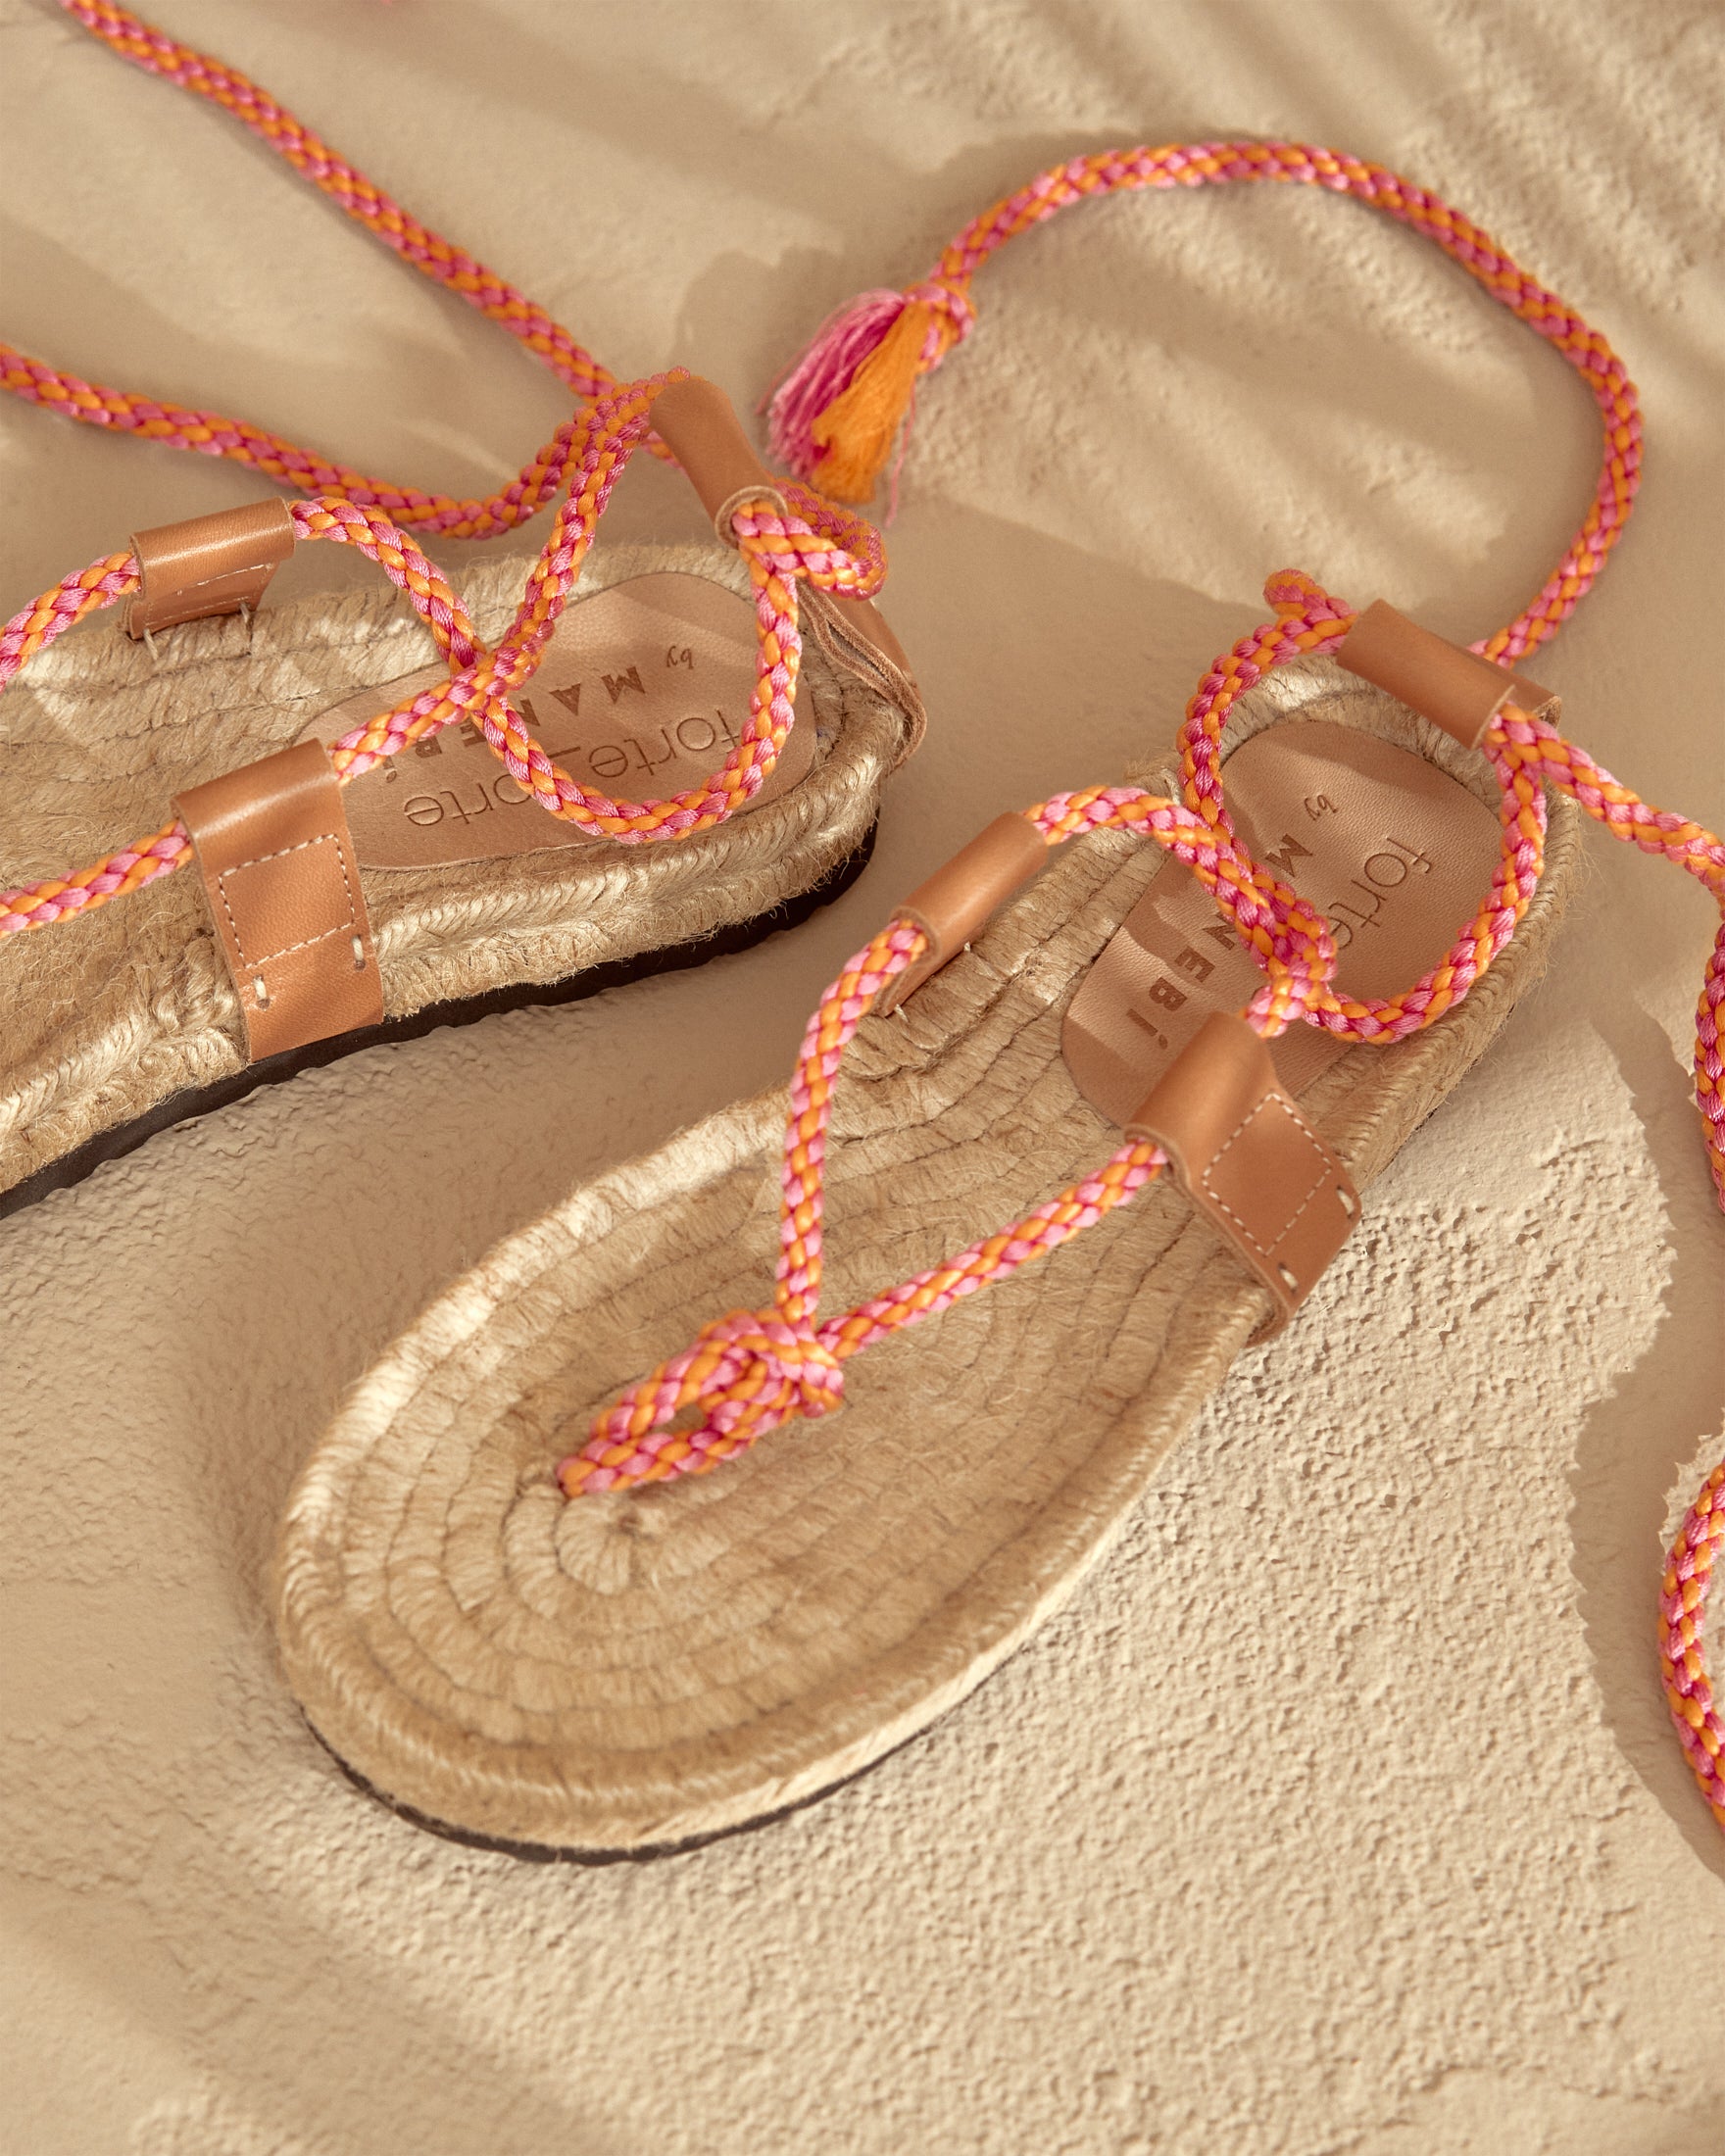 Tie-Up Ropes Jute Sandals - Pink Orange Braid